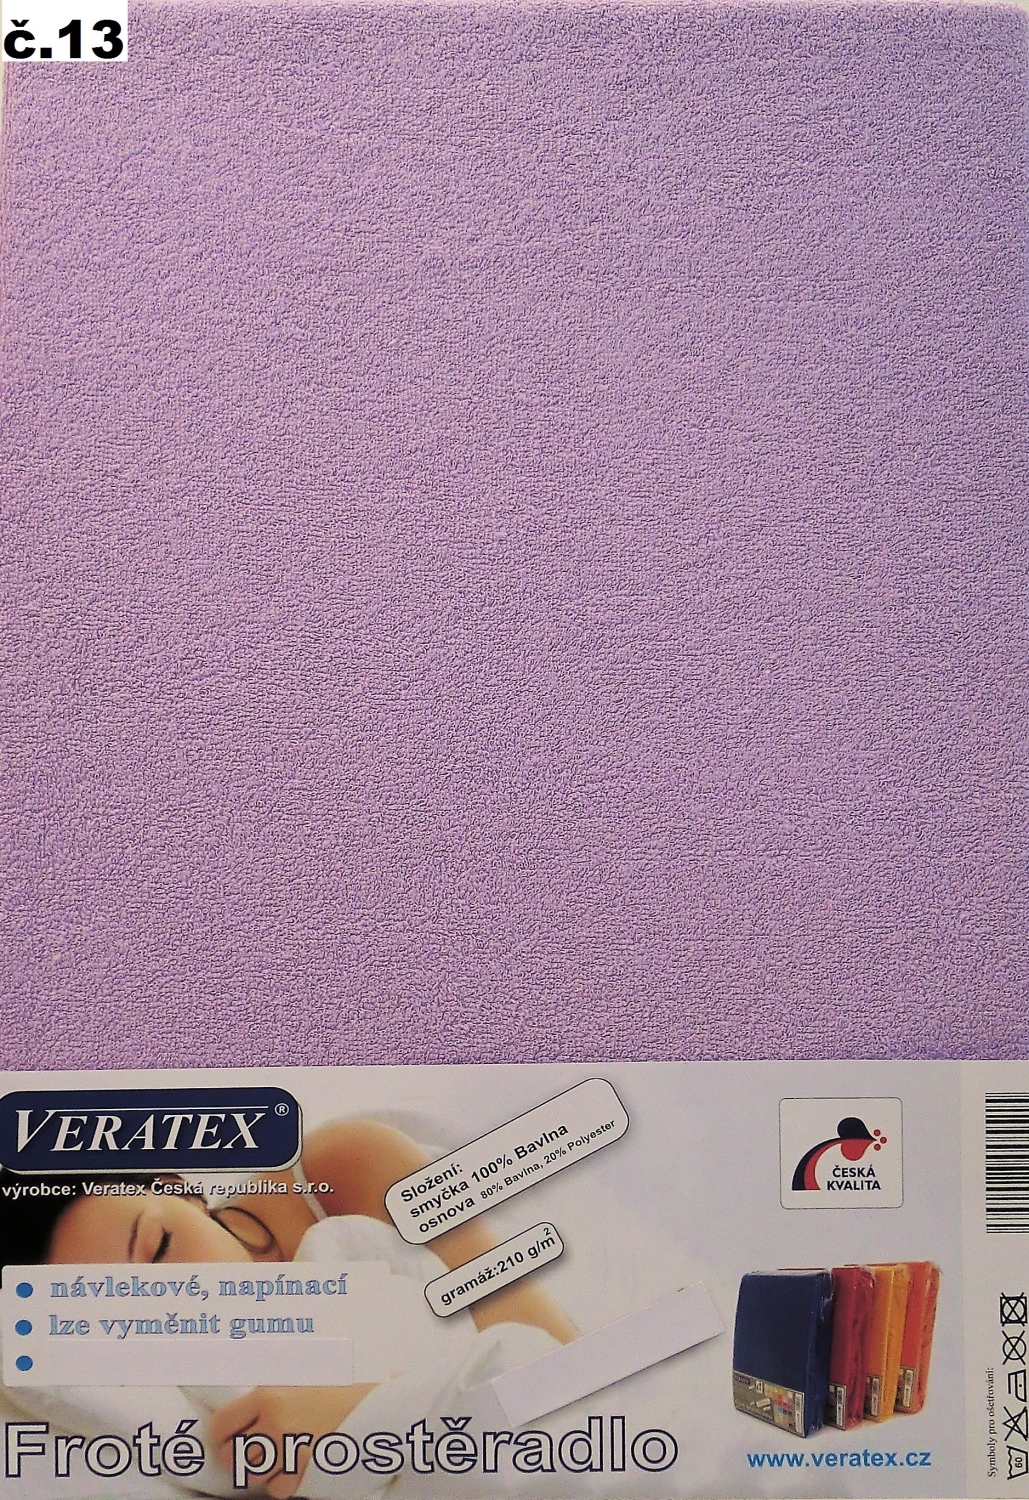 Veratex Froté prostěradlo jednolůžko 100x200/25cm (č.13-fialkové)